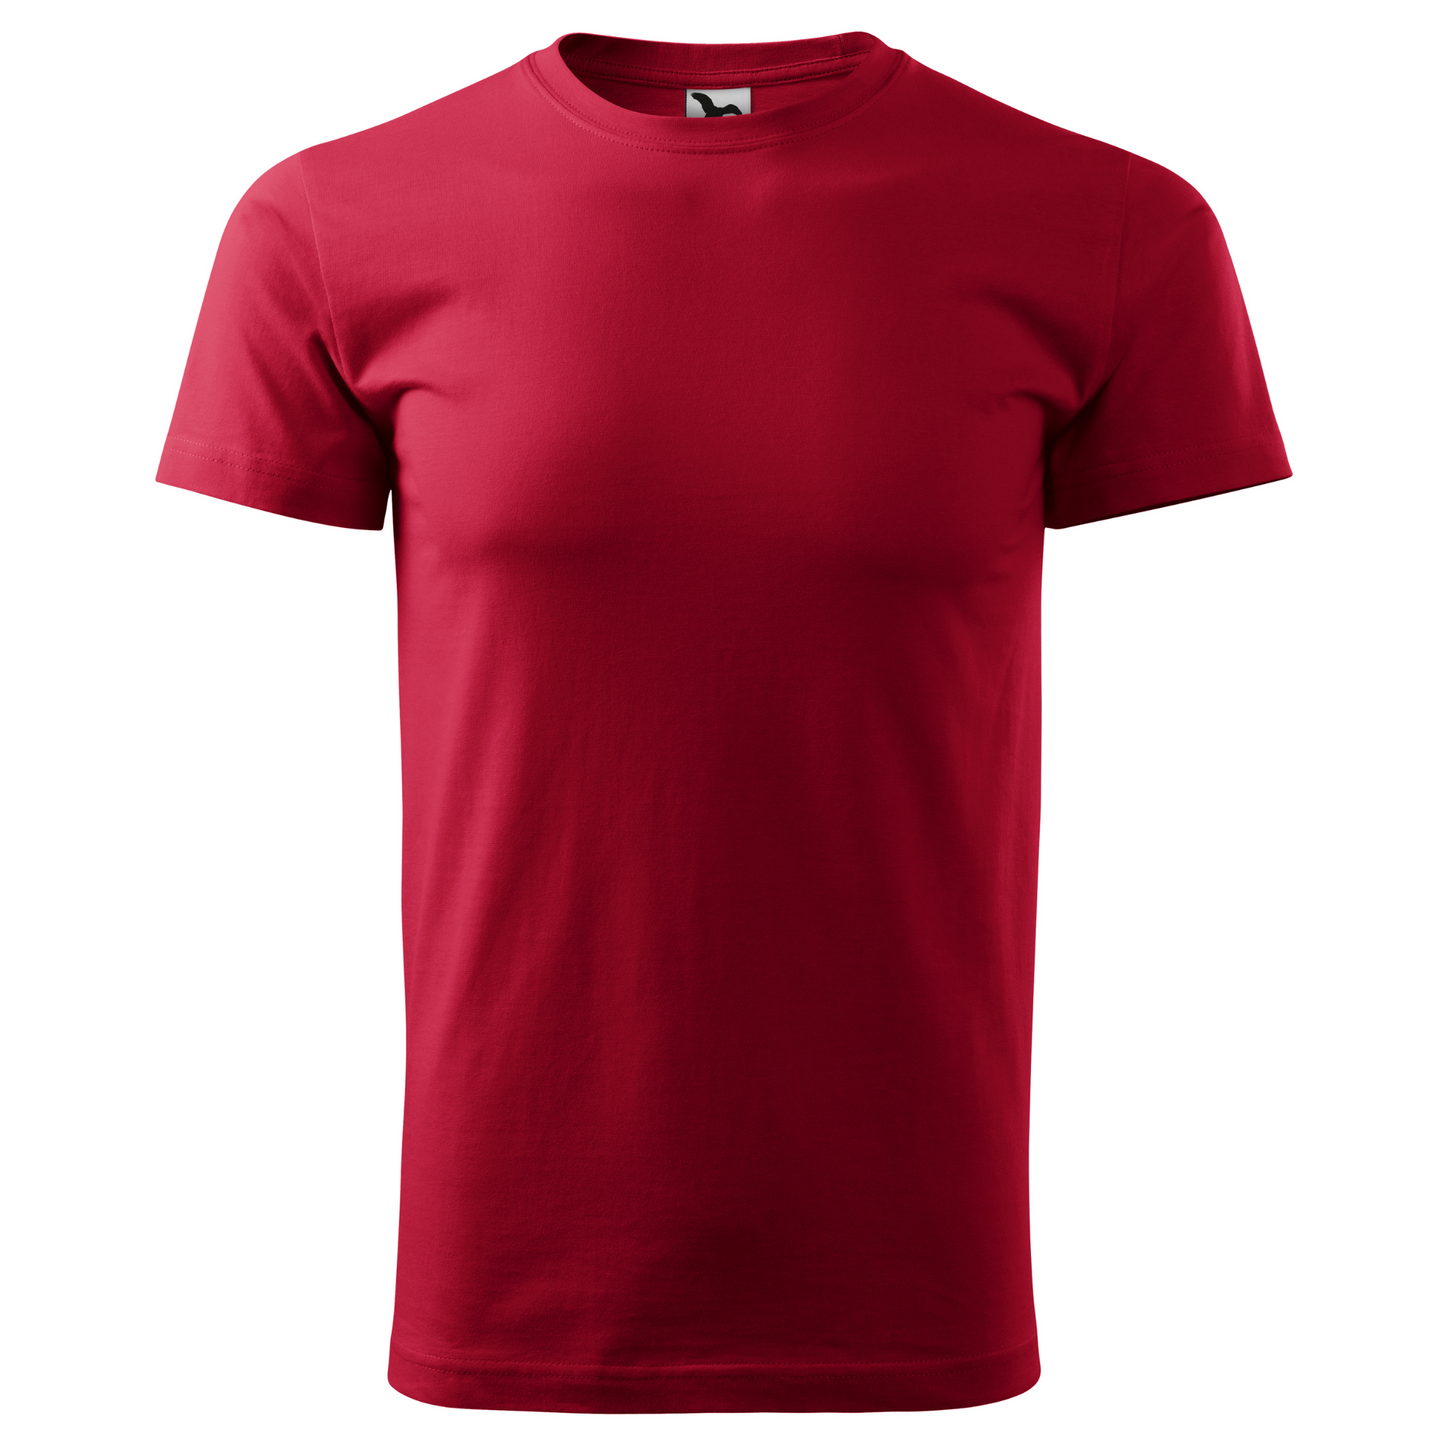 Tricou barbat - Variații Rosu